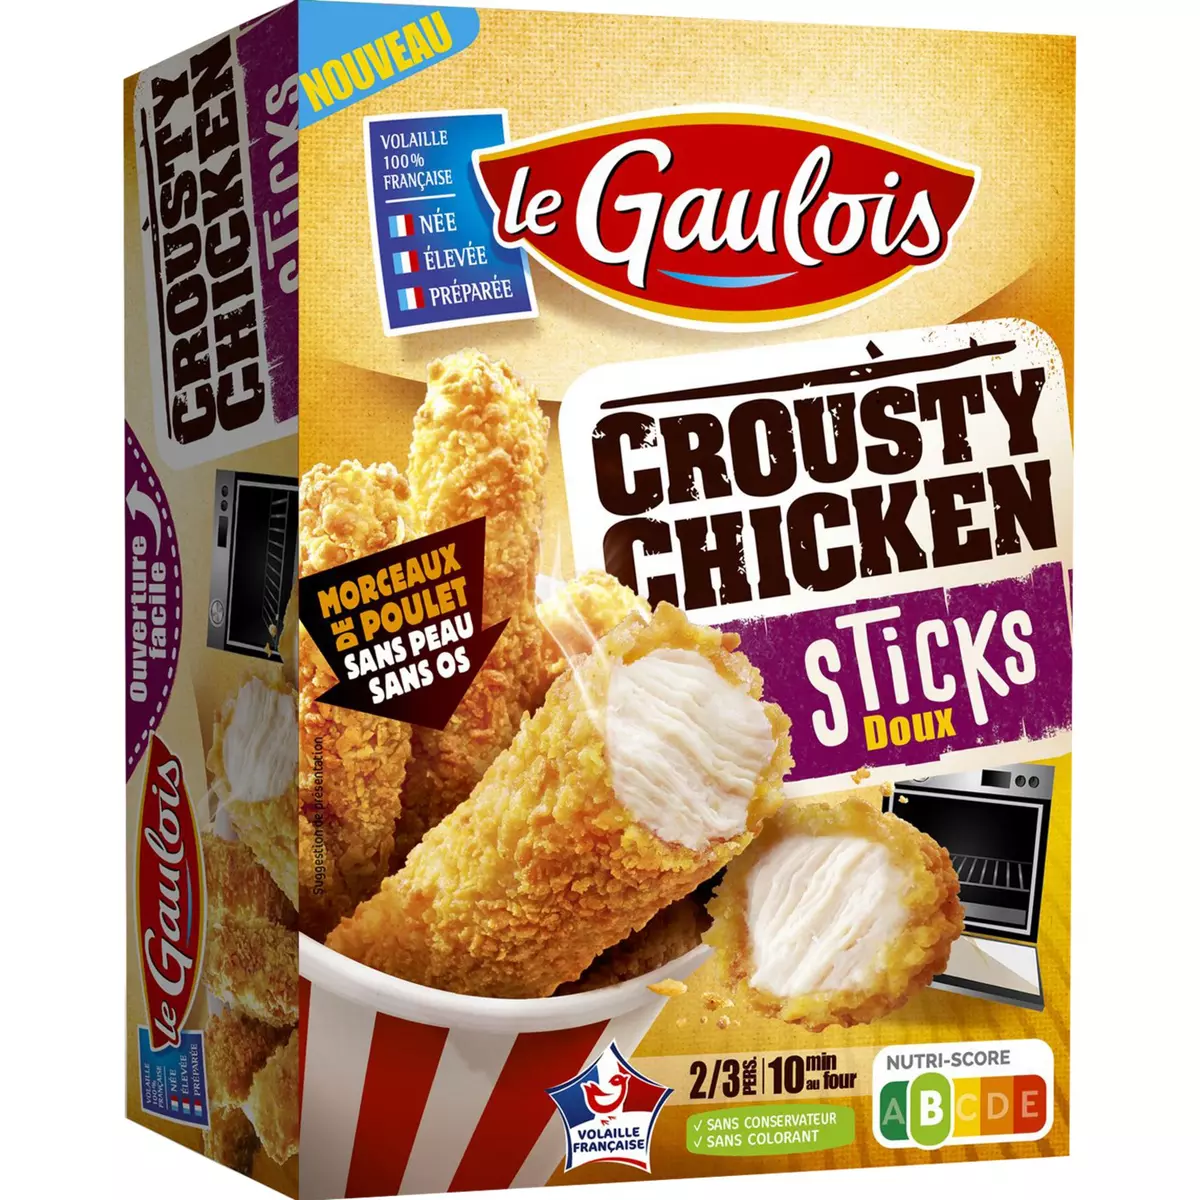 LE GAULOIS Crousty chicken sticks morceaux de poulet 2-3 portions 320g